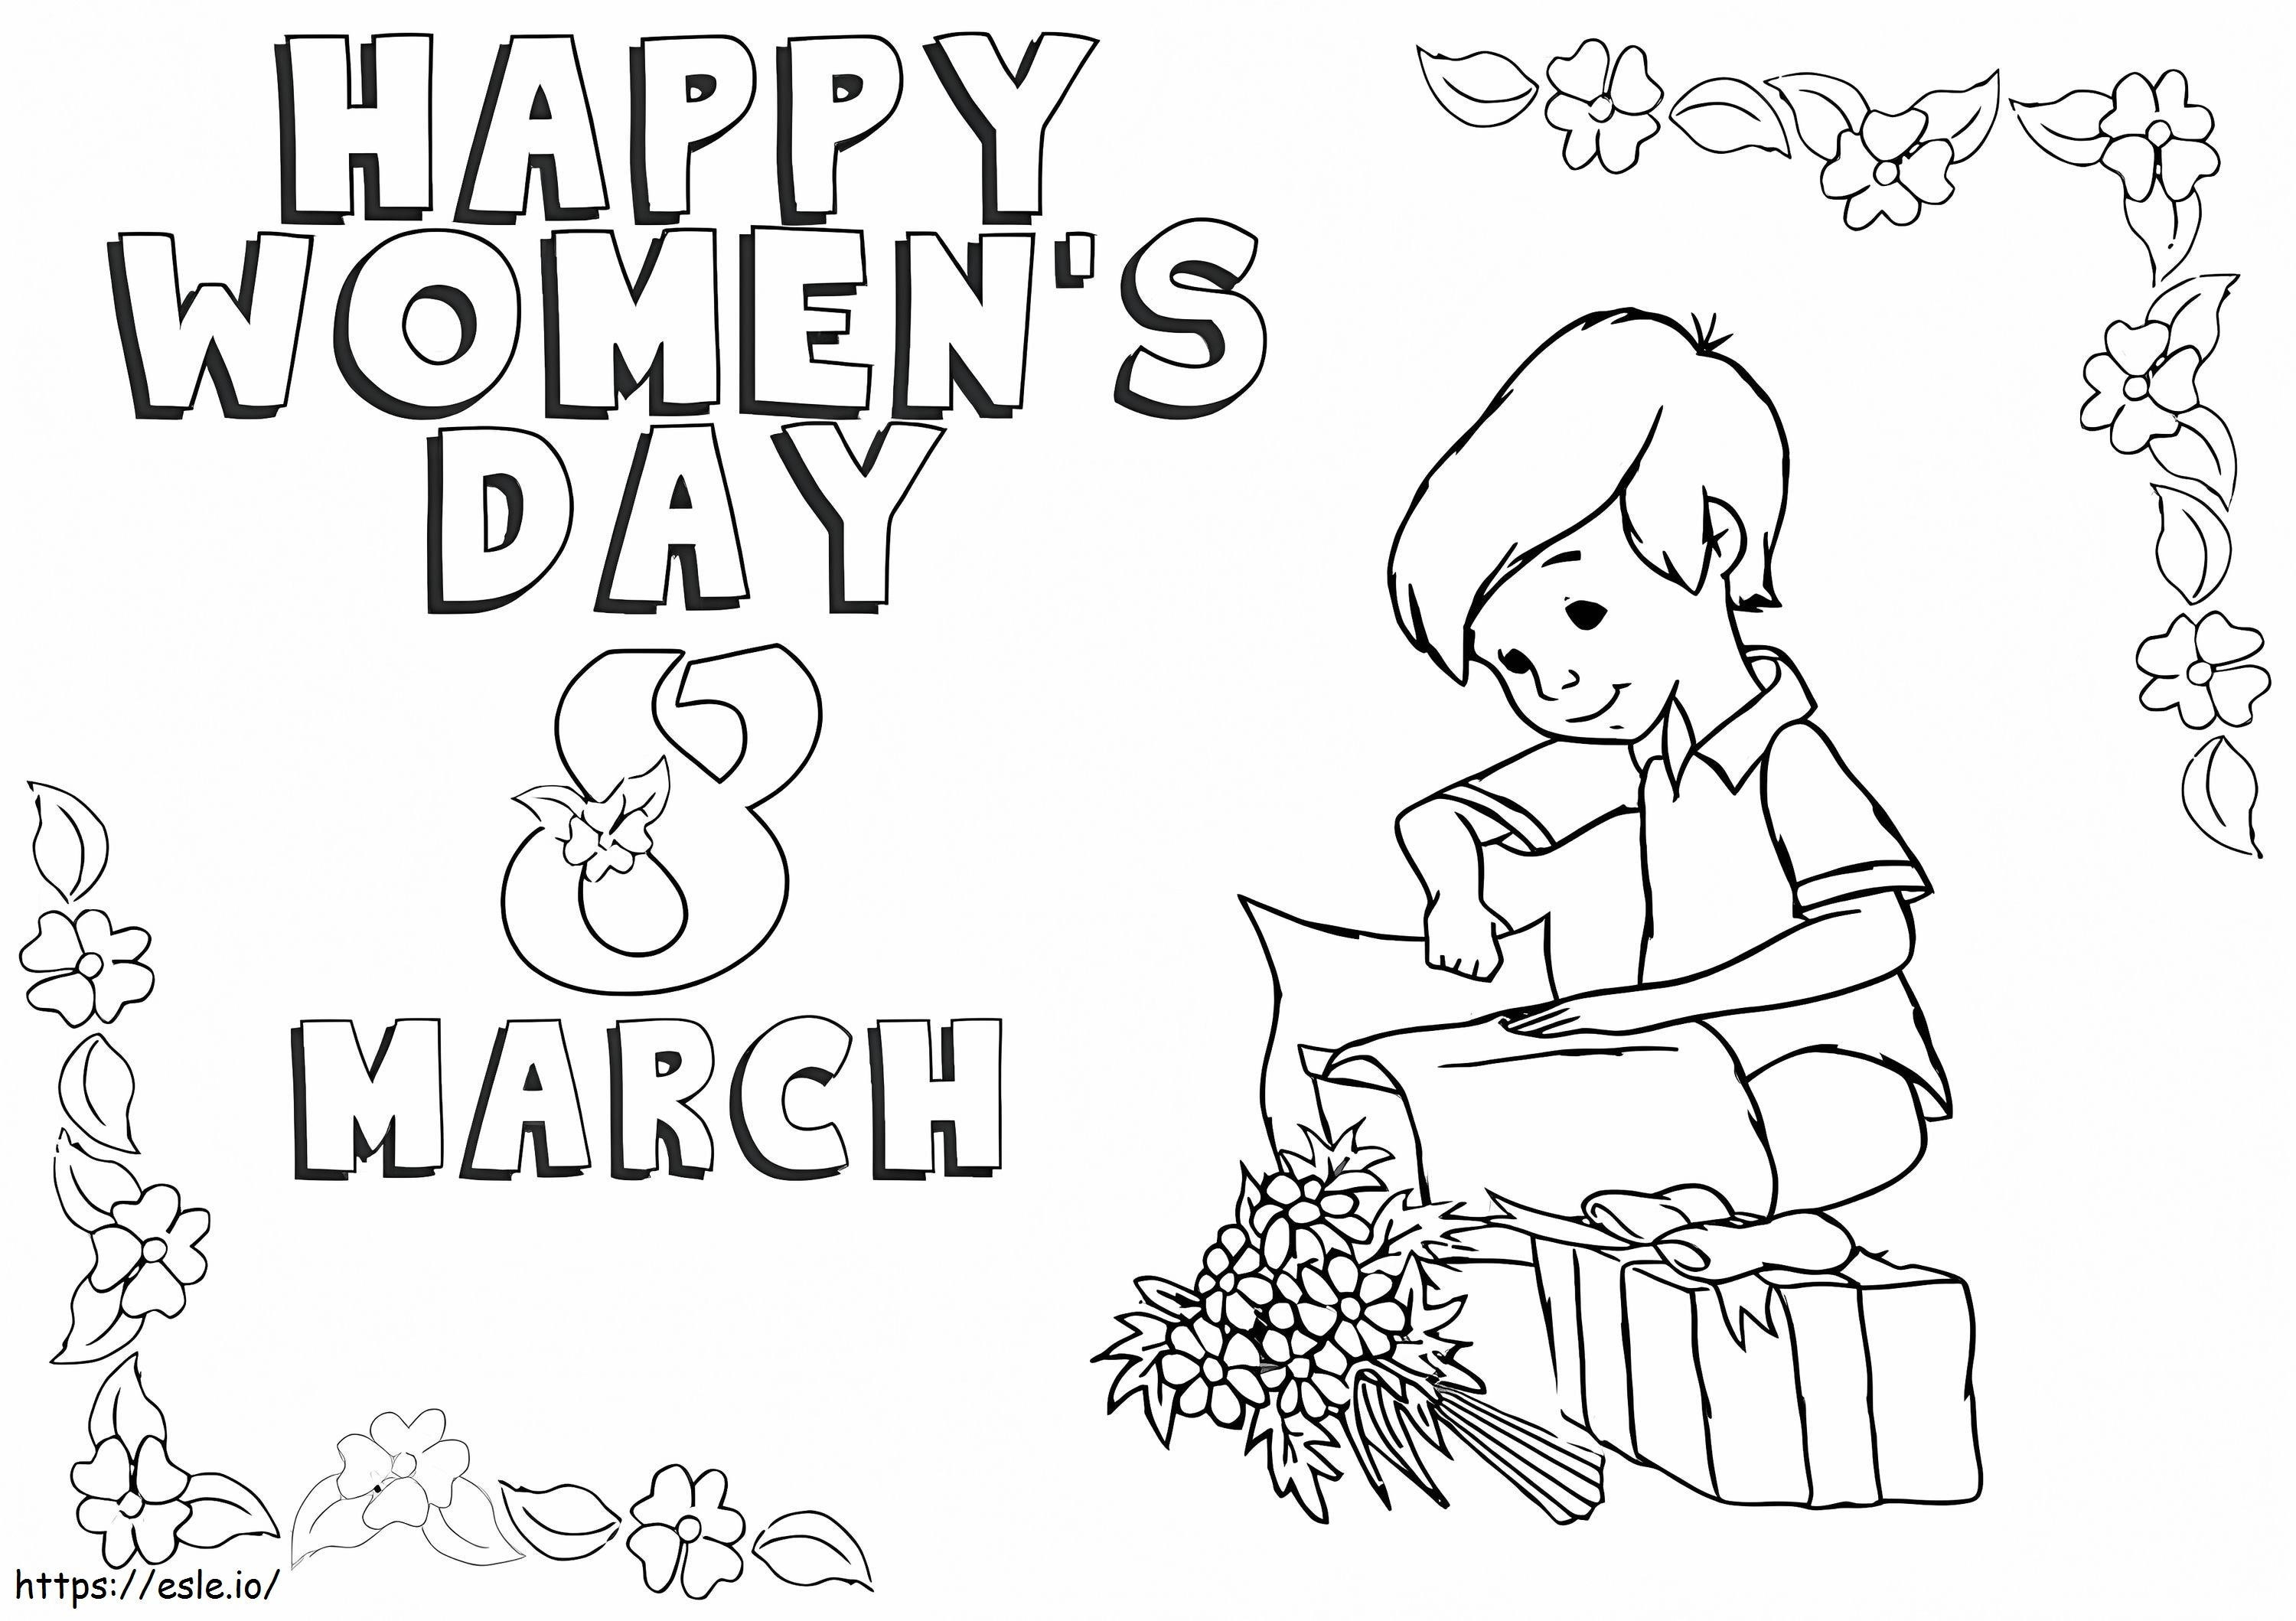 1 Mart Kadınlar Günü boyama